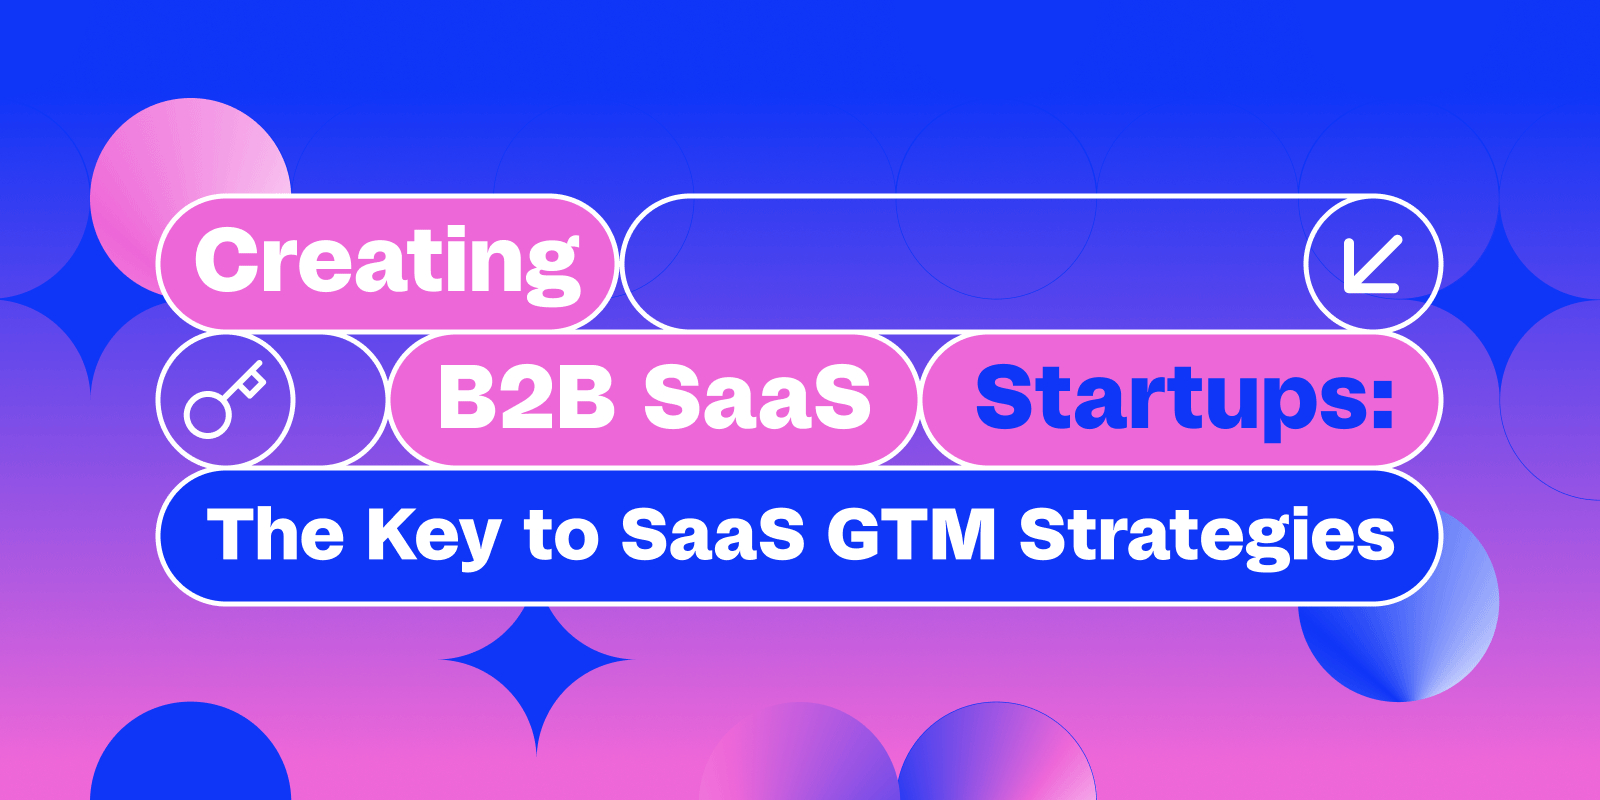 Creating B2B SaaS Startups: The Key to SaaS GTM Strategies